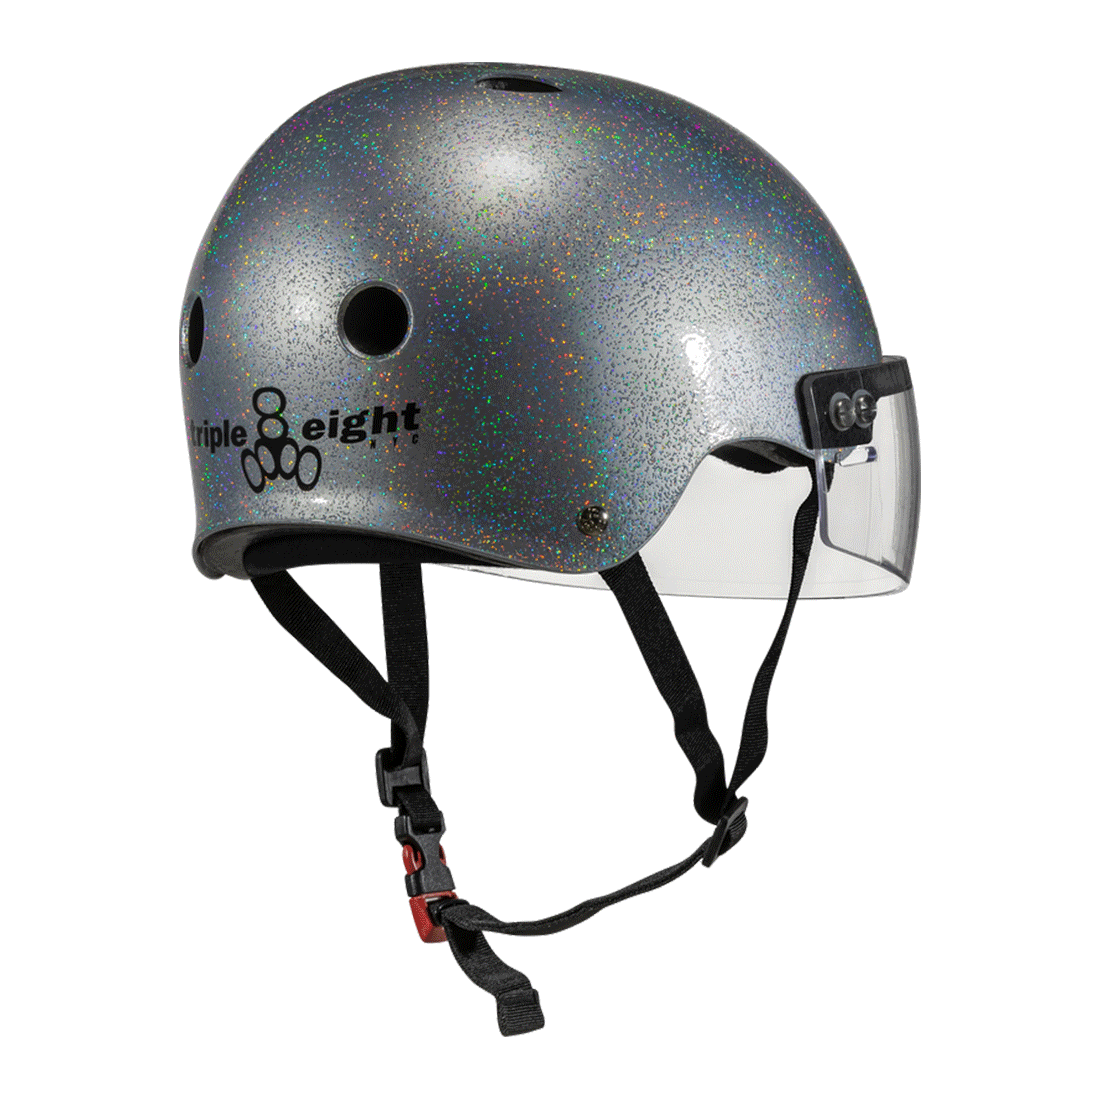 Triple 8 THE Cert SS Visor Helmet - Silver Glitter Helmets